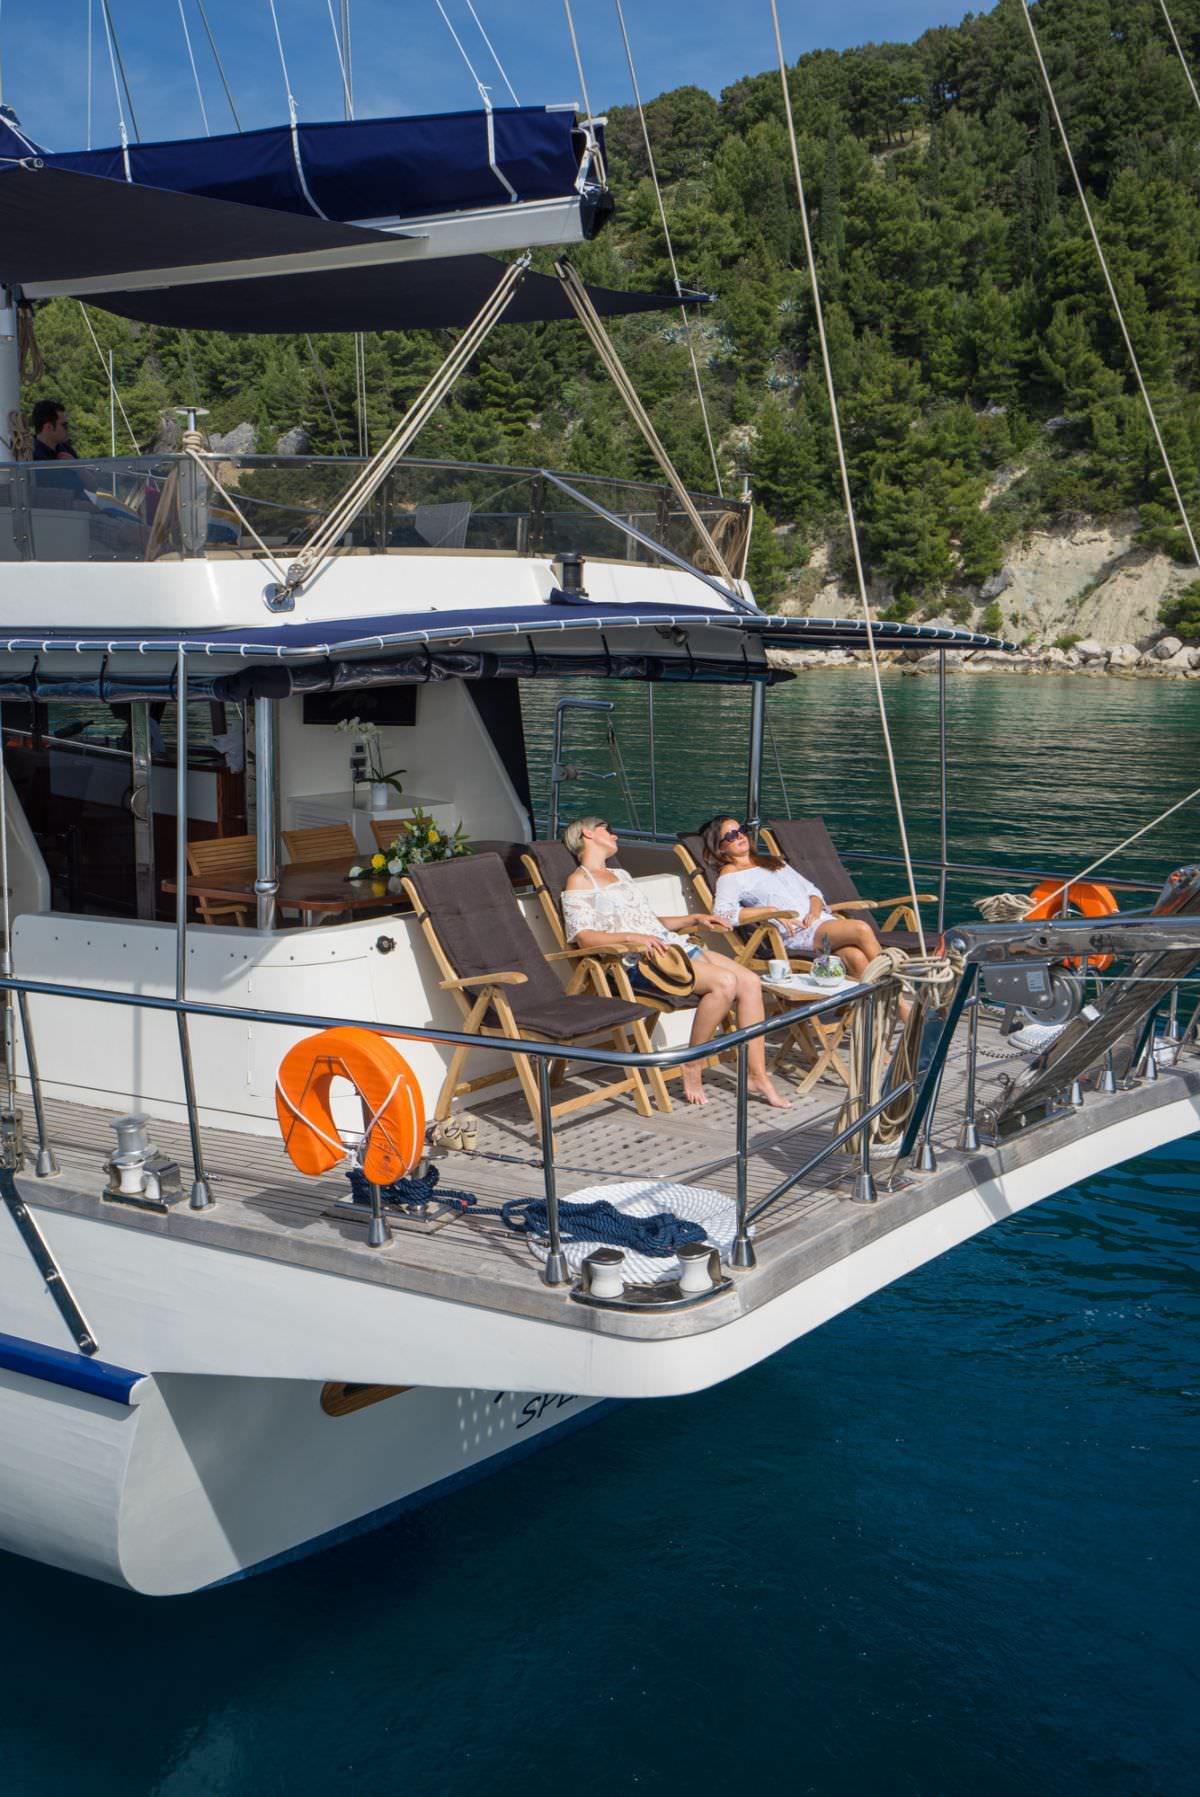 alba - Yacht Charter Zaton & Boat hire in Croatia 4